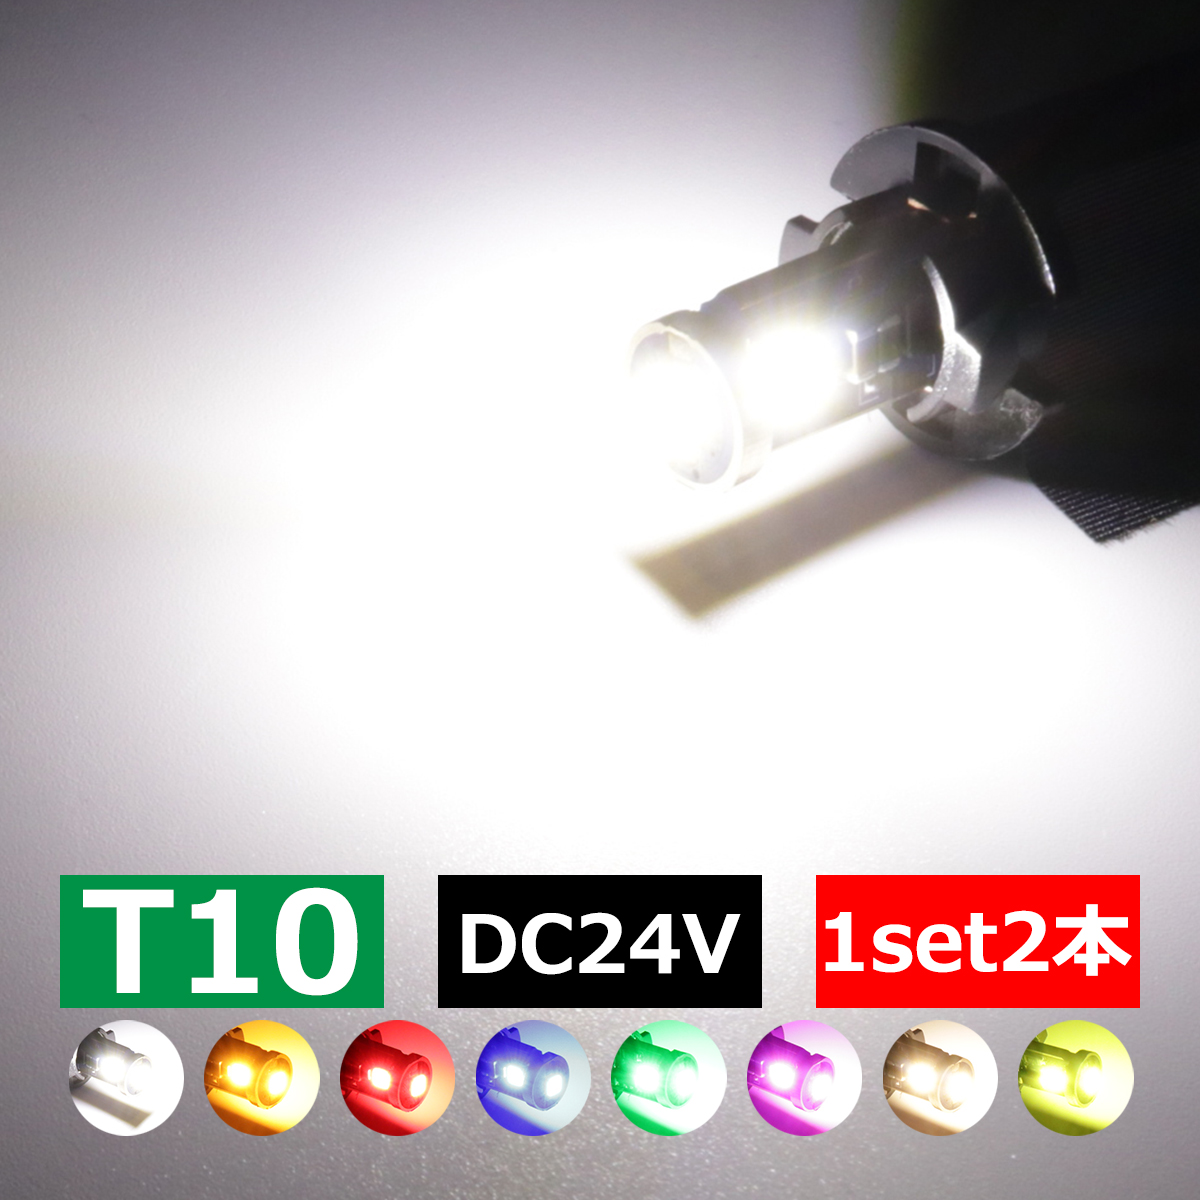 24V専用 T10 LED ウェッジ バルブ 2個セット 高輝度 3SMD搭載 小型 ホワイト/アンバー/レッド/ブルー/グリーン/パープル/電球色/レモンイエロー